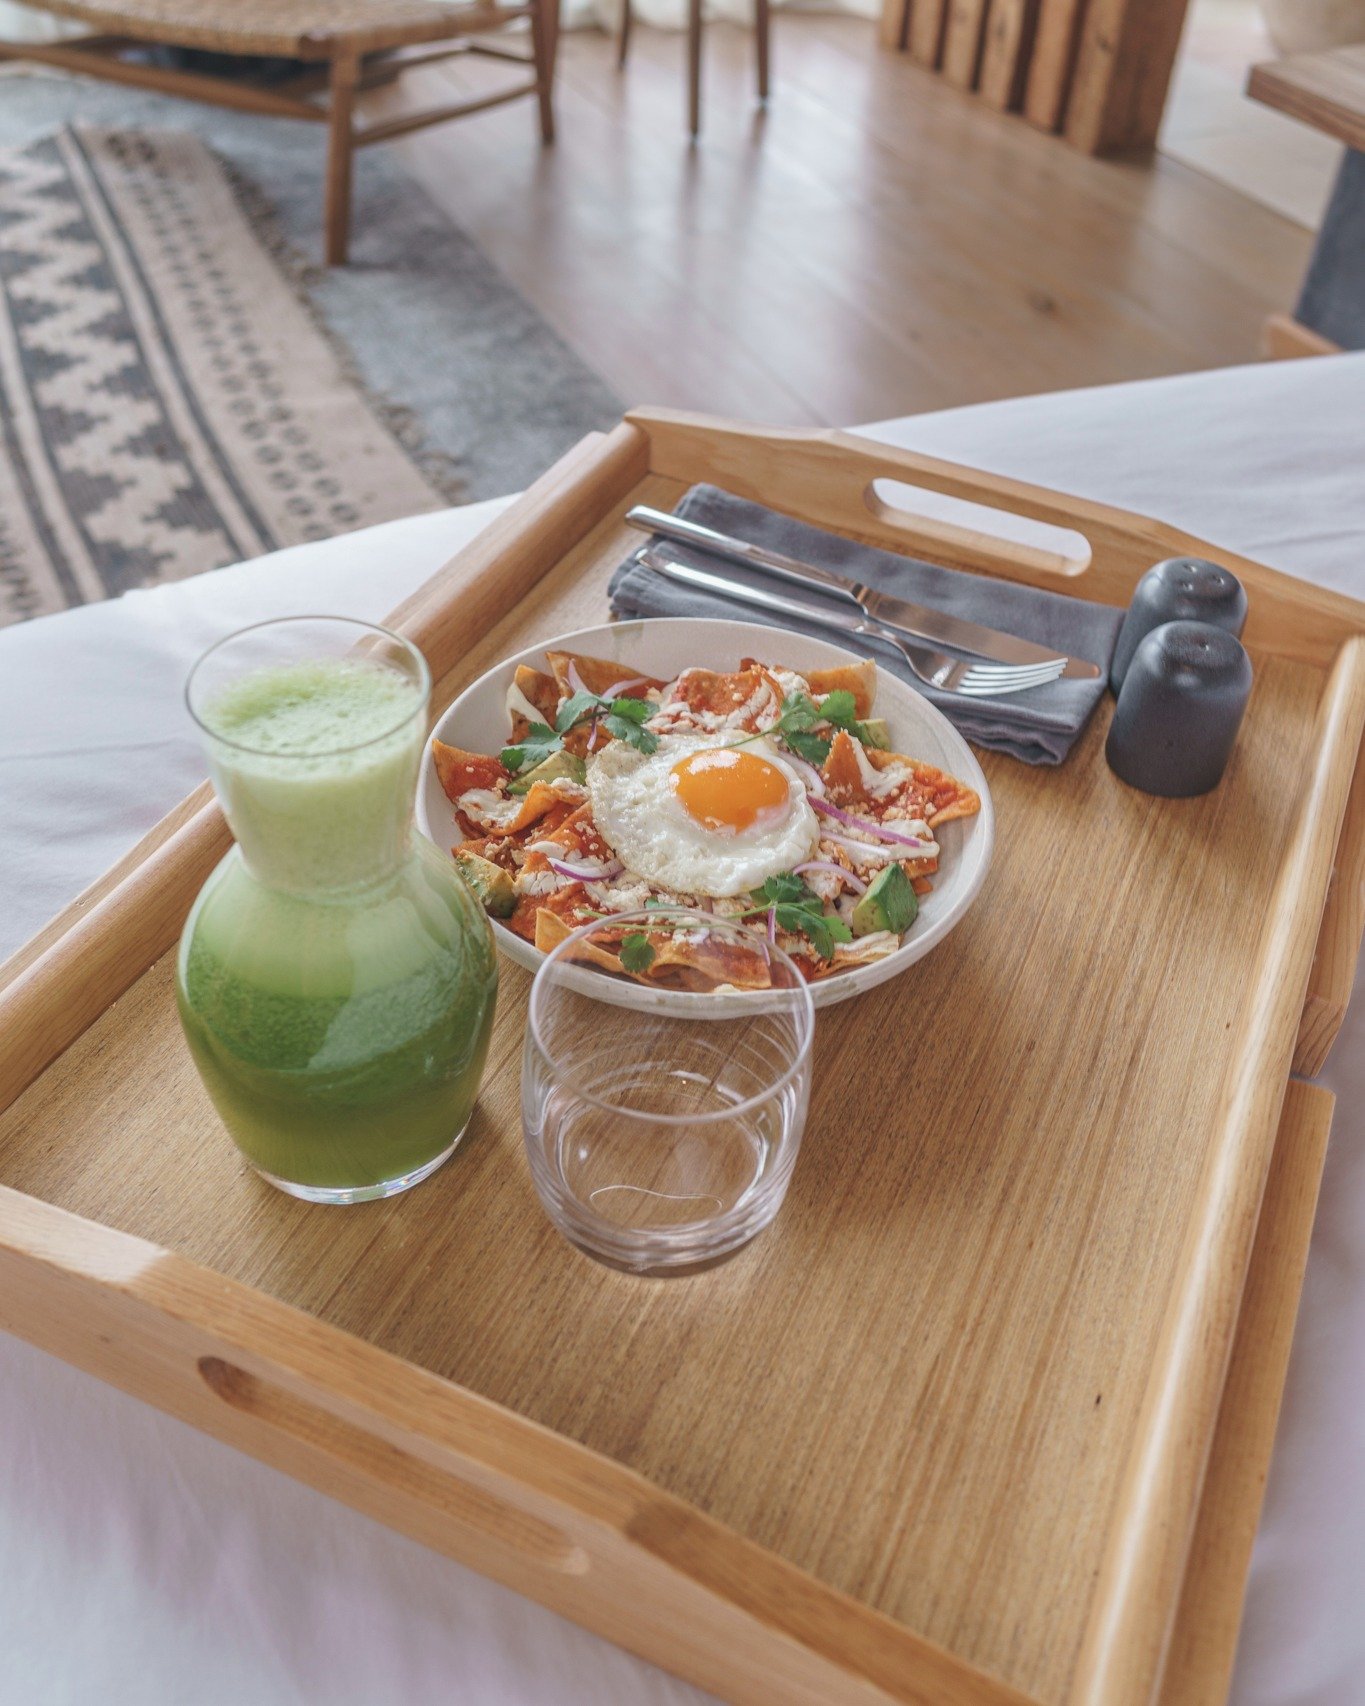 Desayuno en tu habitaci&oacute;n. Buen provecho.
 
Breakfast in your room, Bon appetit.
.
.
#TallerdeJuan #CorazondeLuna #Restaurante #ComidaCalida #SanCristobal